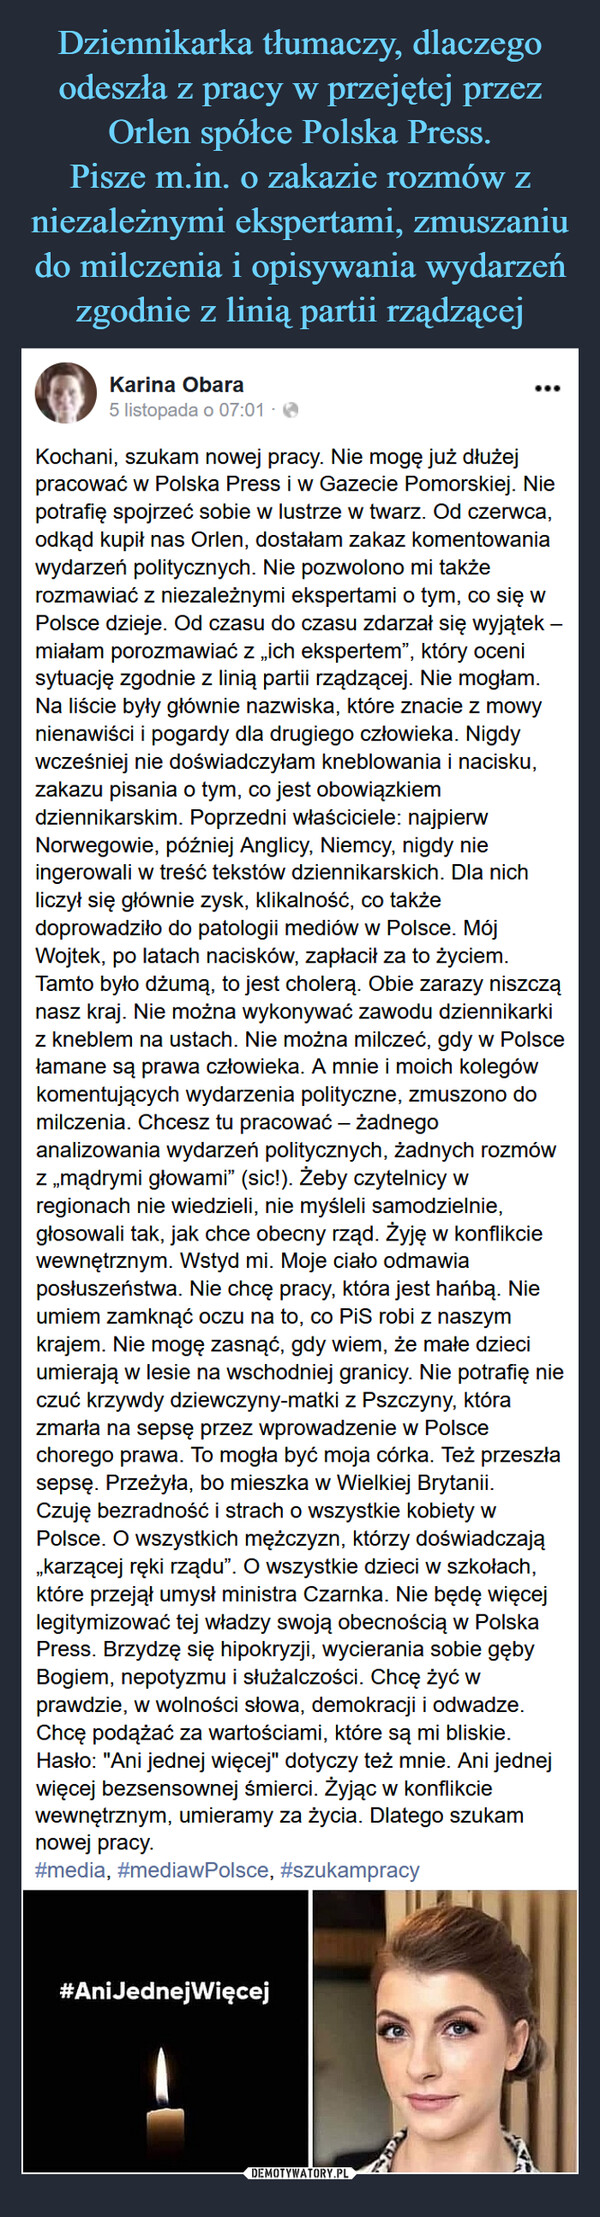 Dziennikarka tłumaczy, dlaczego odeszła z pracy w przejętej przez Orlen spółce Polska Press.
Pisze m.in. o zakazie rozmów z niezależnymi ekspertami, zmuszaniu do milczenia i opisywania wydarzeń zgodnie z linią partii rządzącej